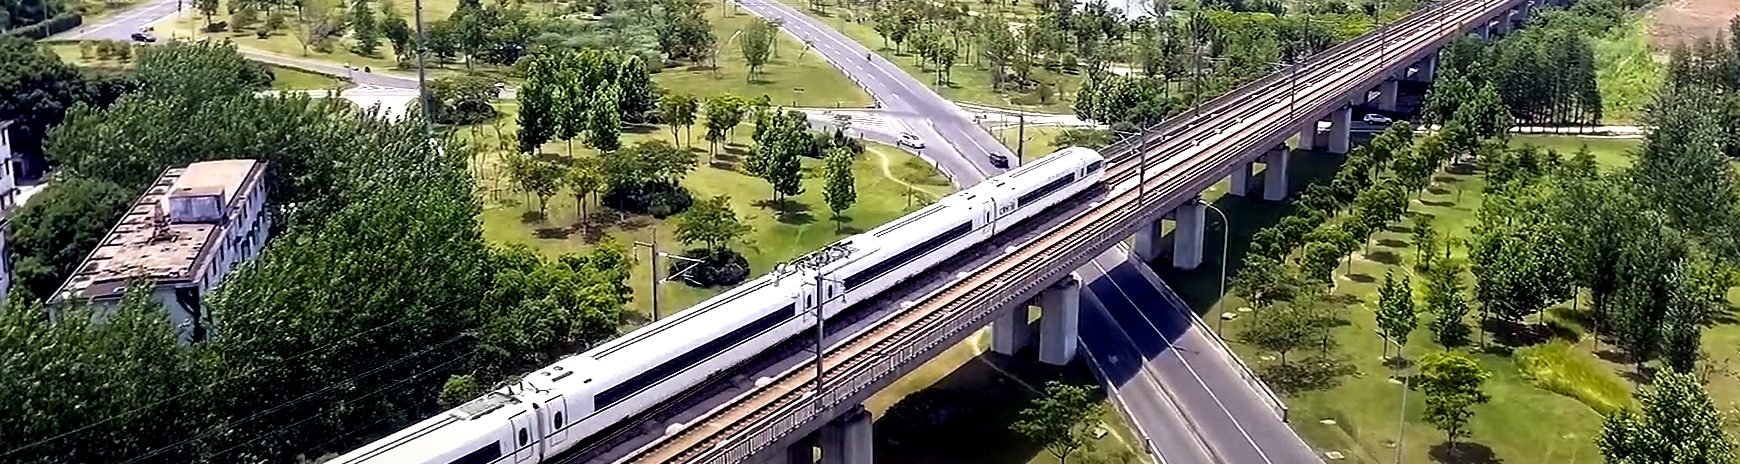 Imagen de un tren, una vía férrea y un puente